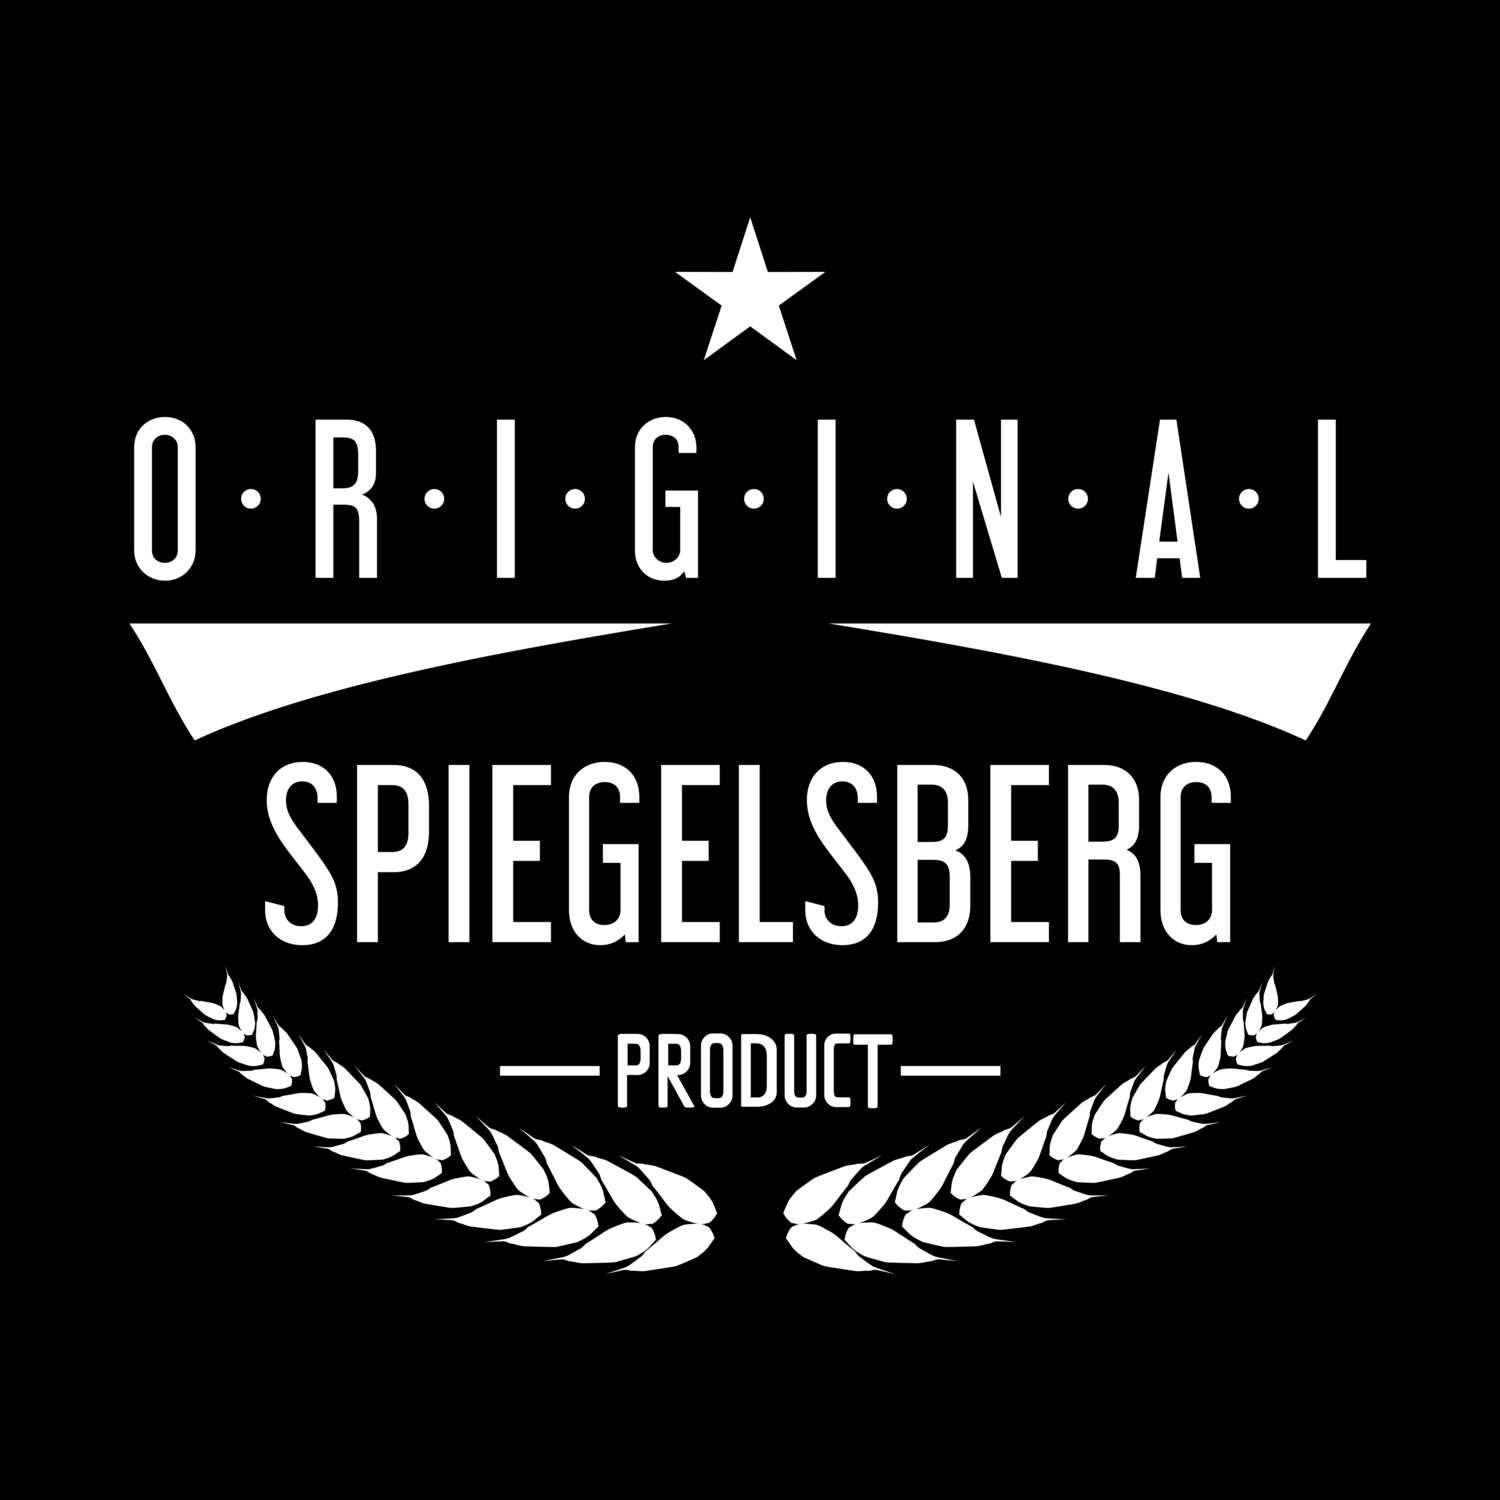 Spiegelsberg T-Shirt »Original Product«